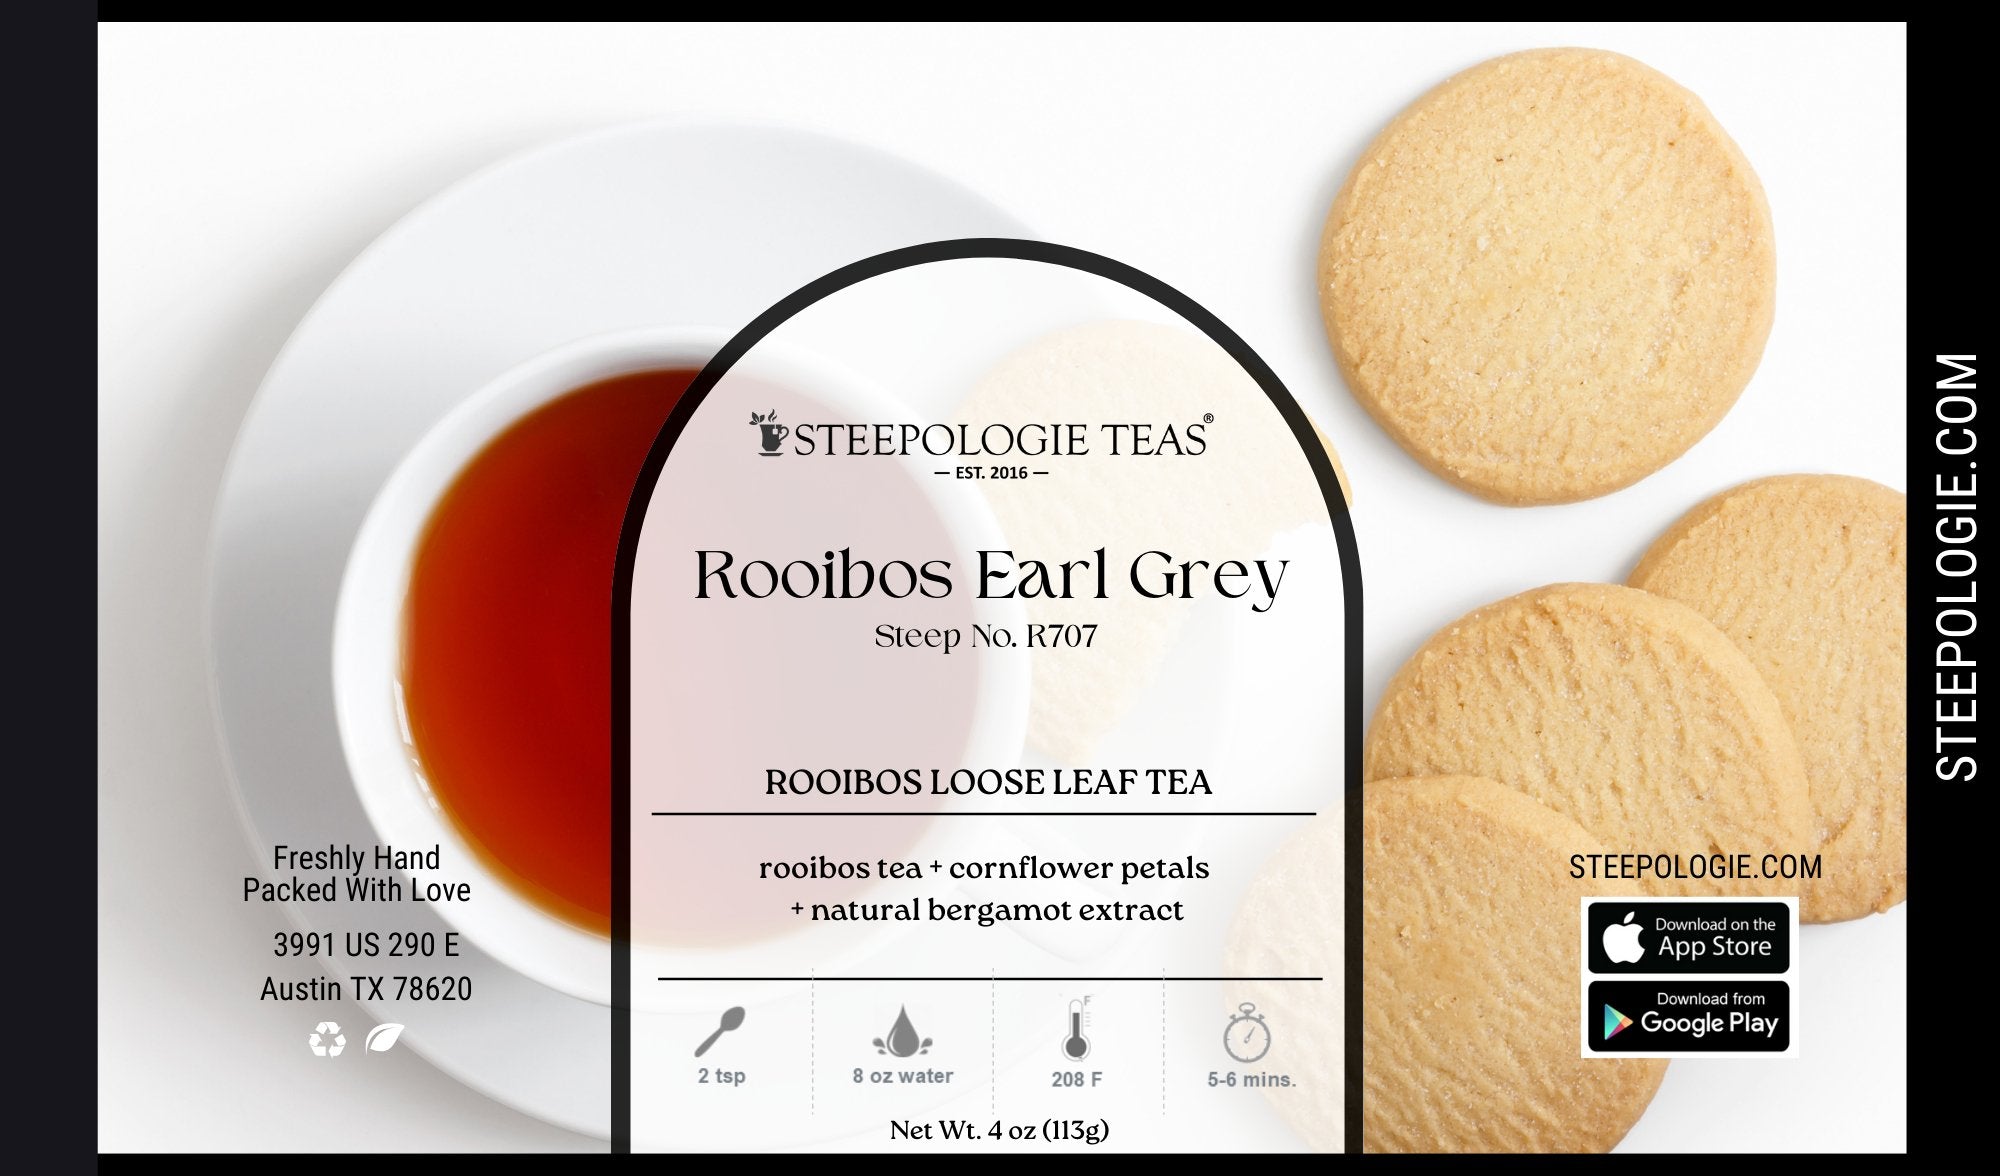 Rooibos Earl Grey Tea (Steep No. R707) - Steepologie